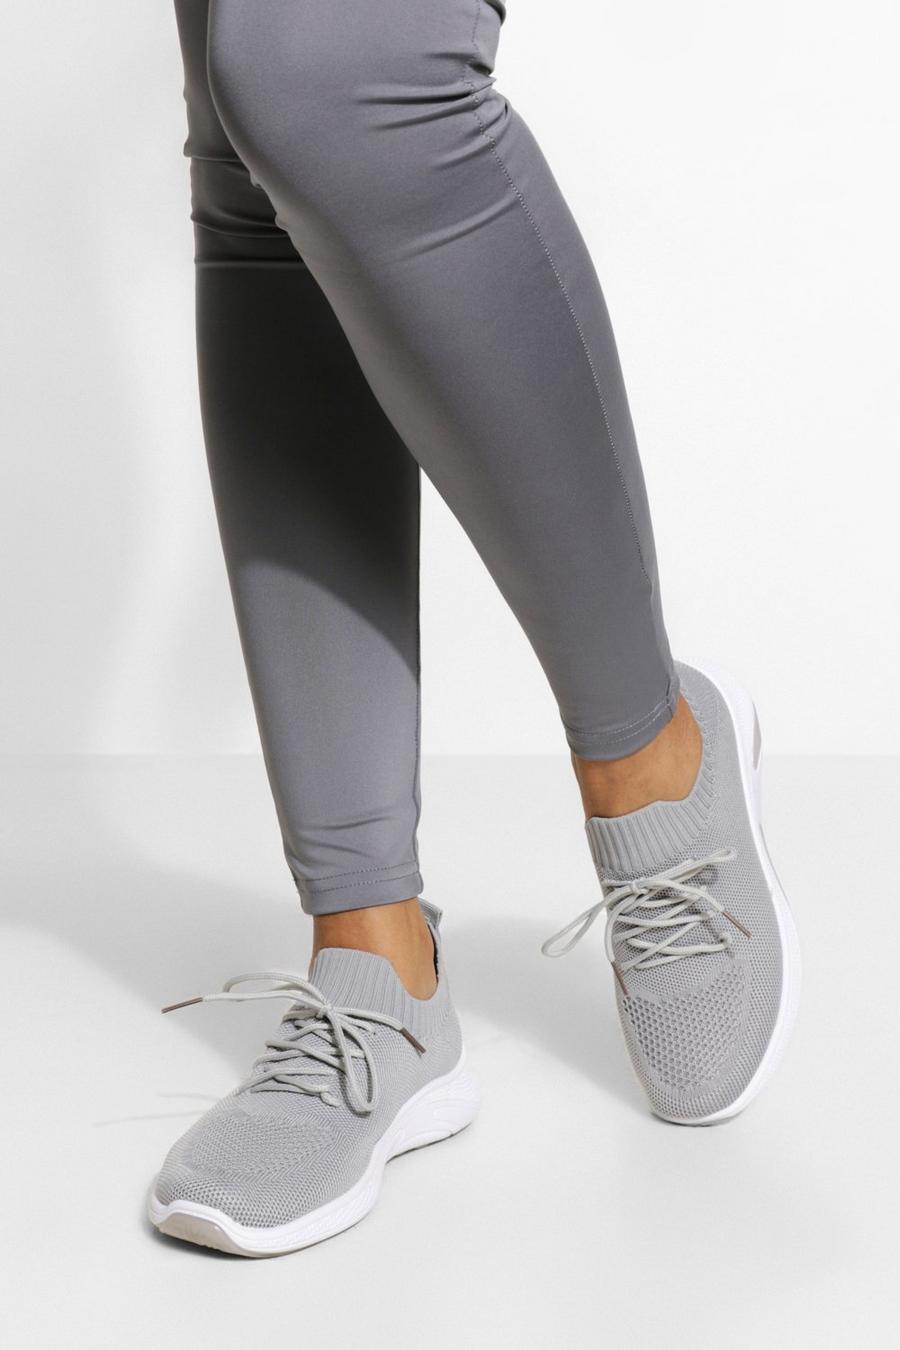 Scarpe da ginnastica sportive a calzata ampia Basic in maglia, Grigio gris